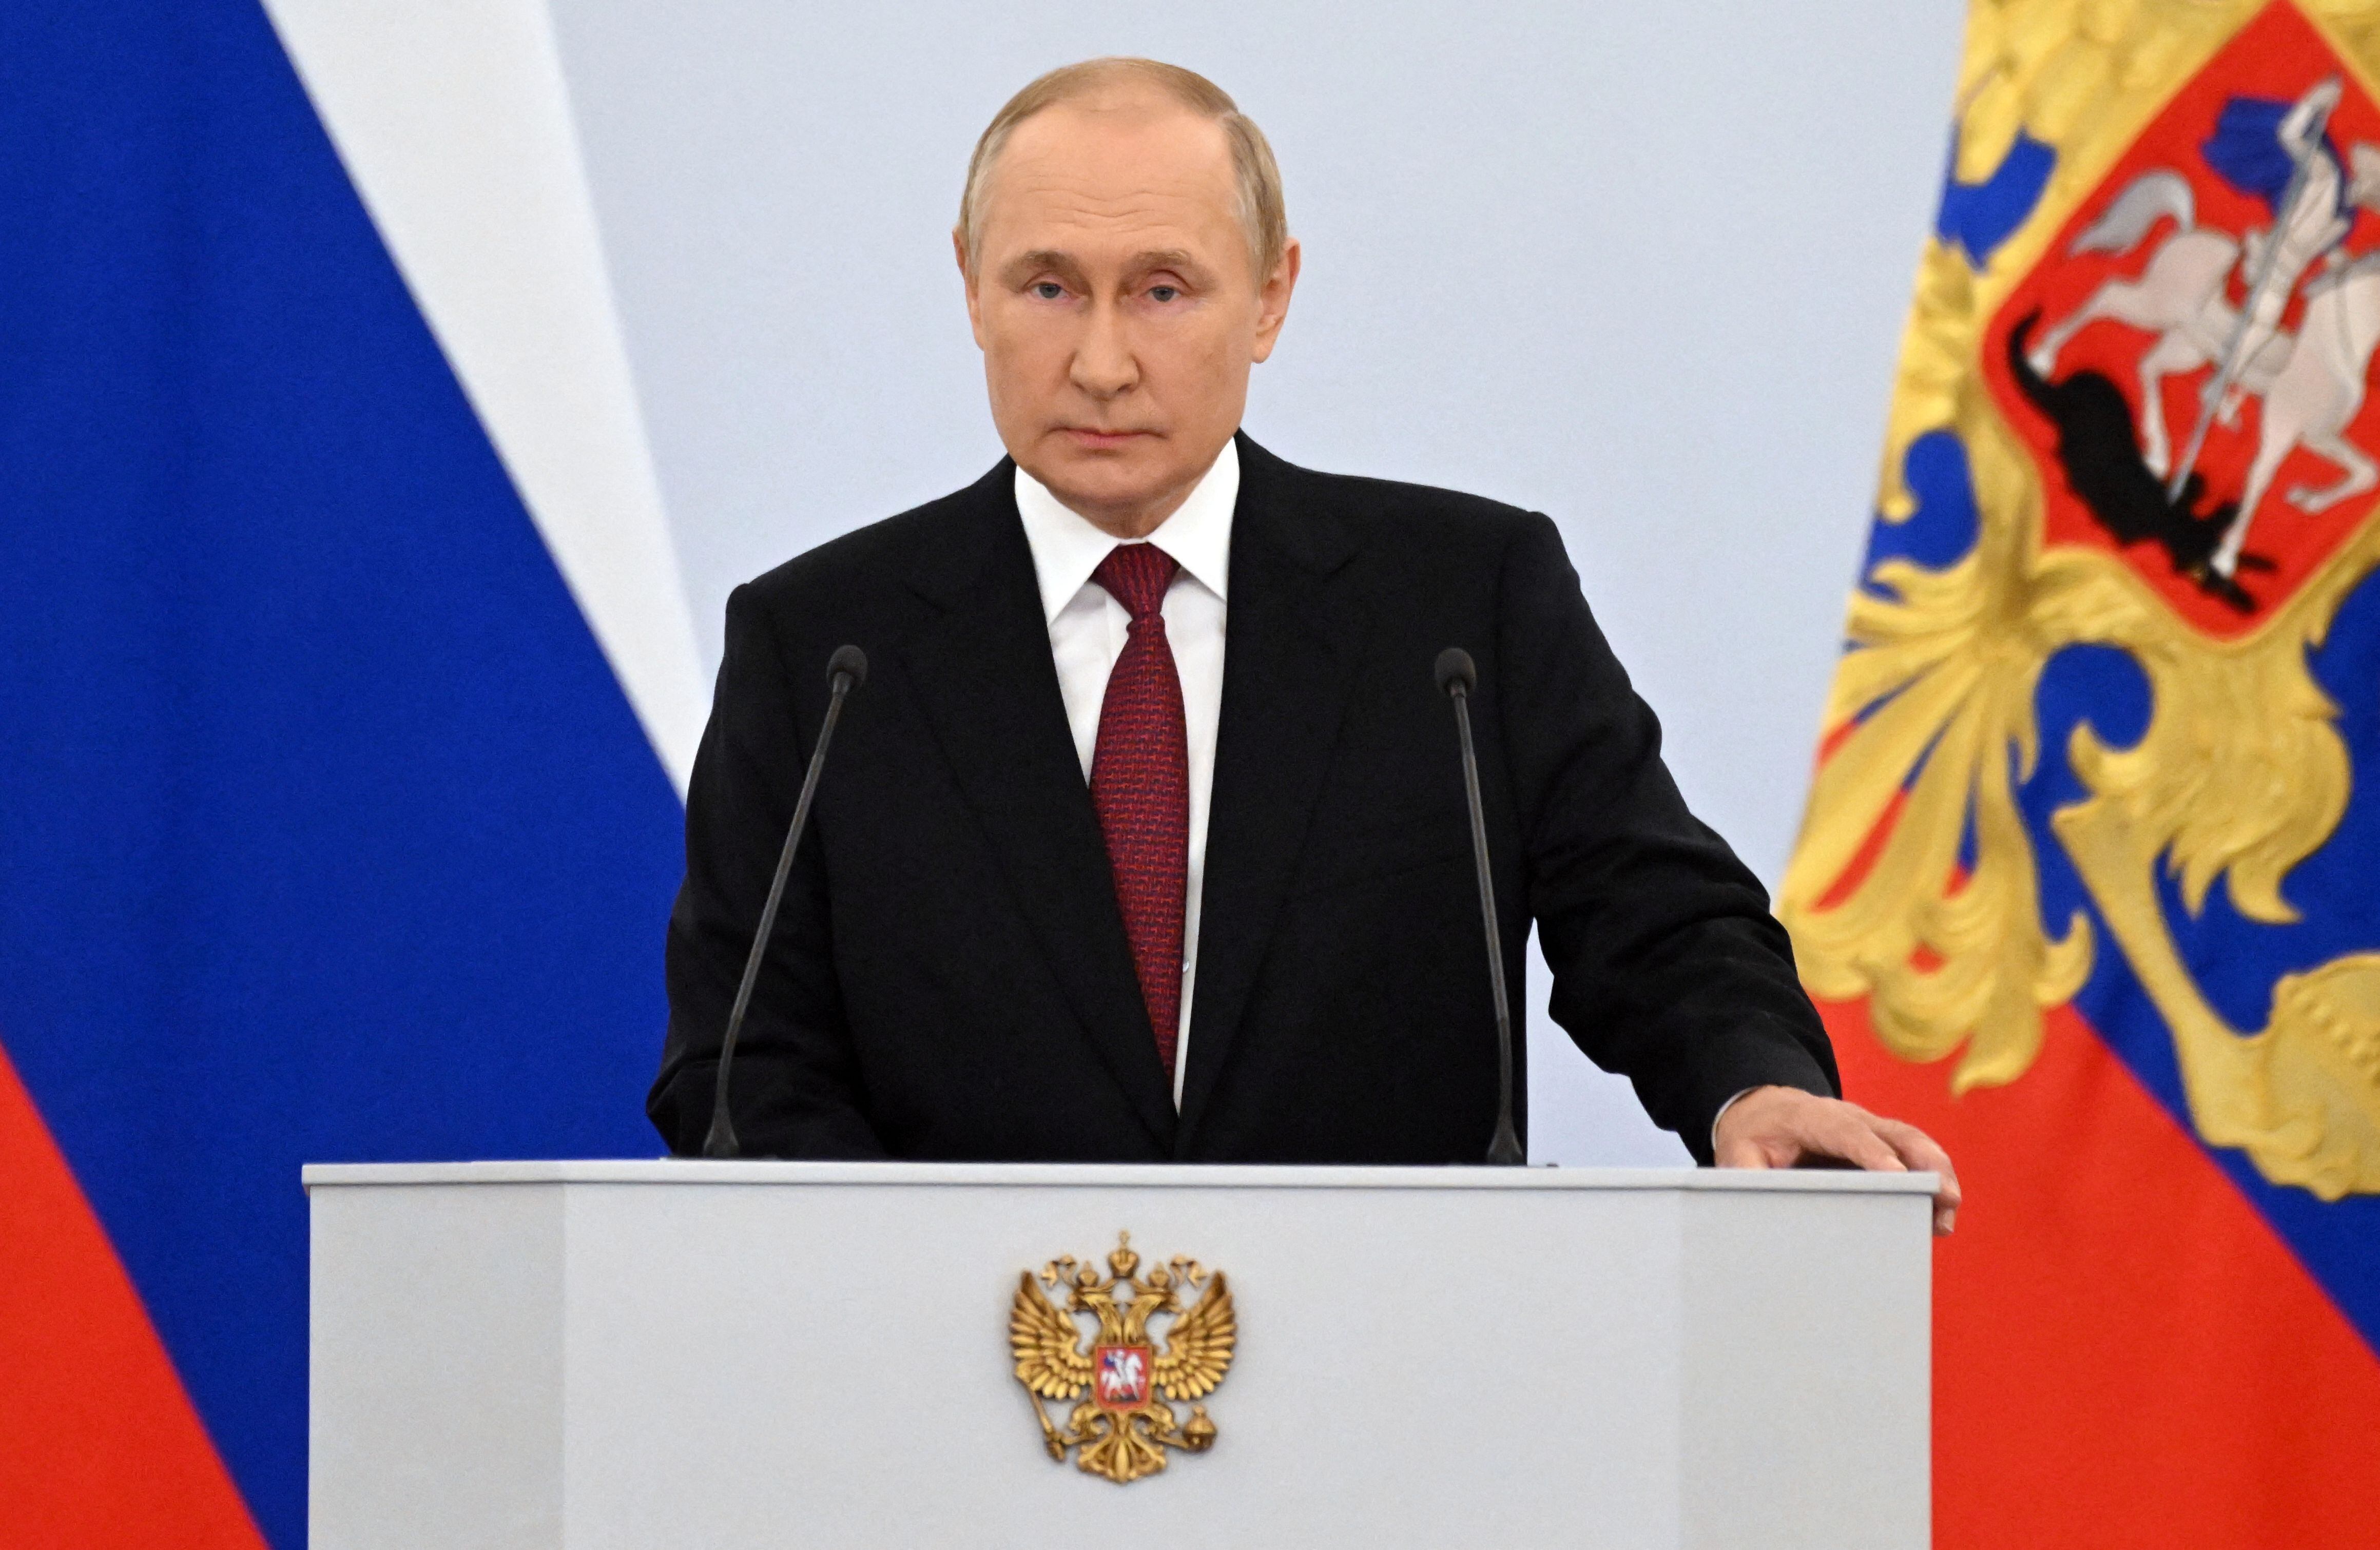 El presidente ruso, Vladimir Putin, da un discurso durante una ceremonia en la que se anexionan formalmente cuatro regiones de Ucrania ocupadas por tropas rusas: Lugansk, Donetsk, Kherson y Zaporizhzhia, en el Kremlin de Moscú el 30 de septiembre de 2022.